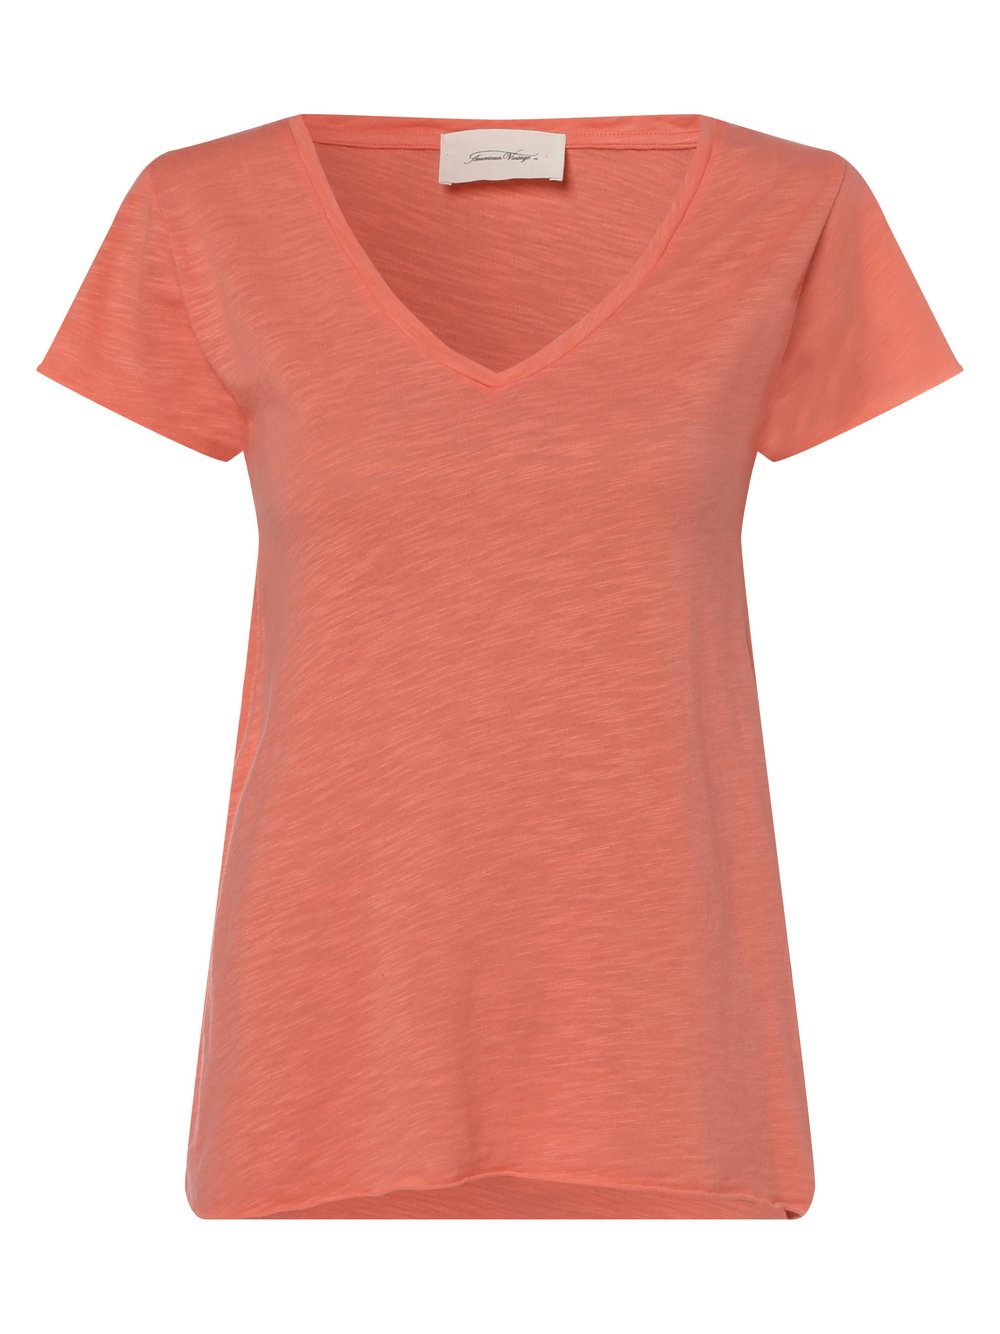 American vintage - T-shirt damski – Jacksonville, pomarańczowy|różowy